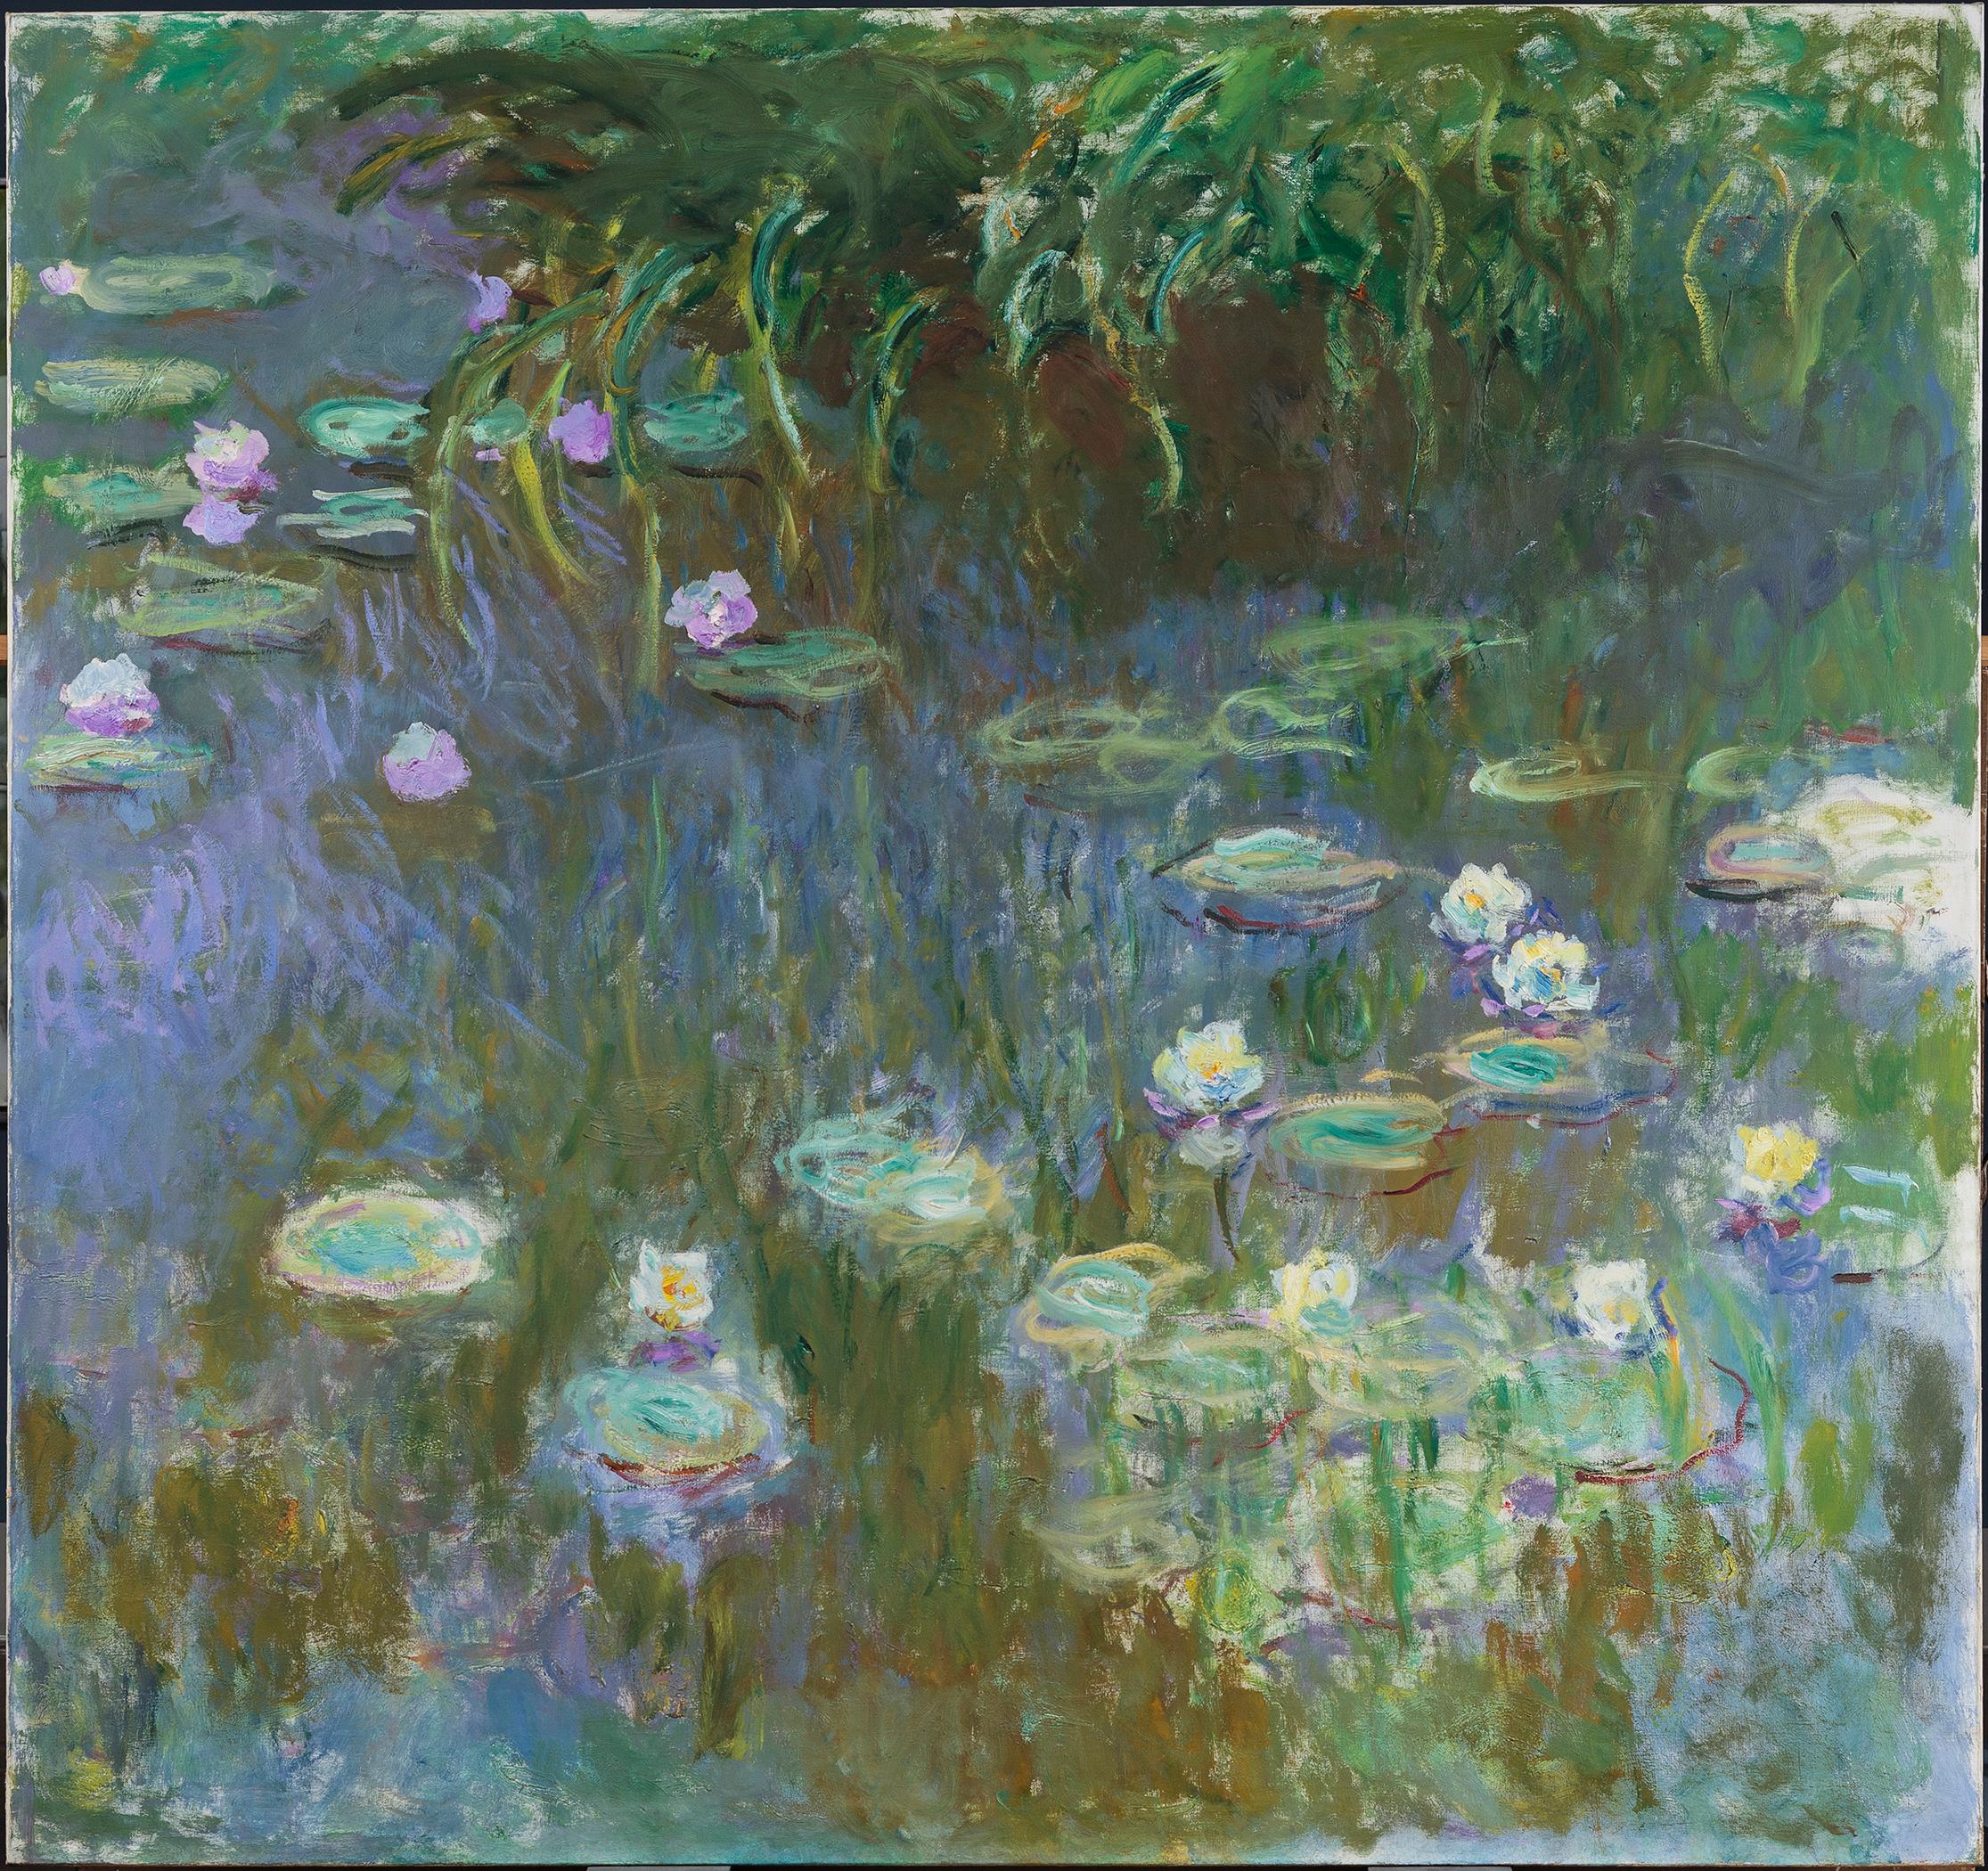 Lilie wodne by Claude Monet - 1922 - 213.3 x 200 cm 